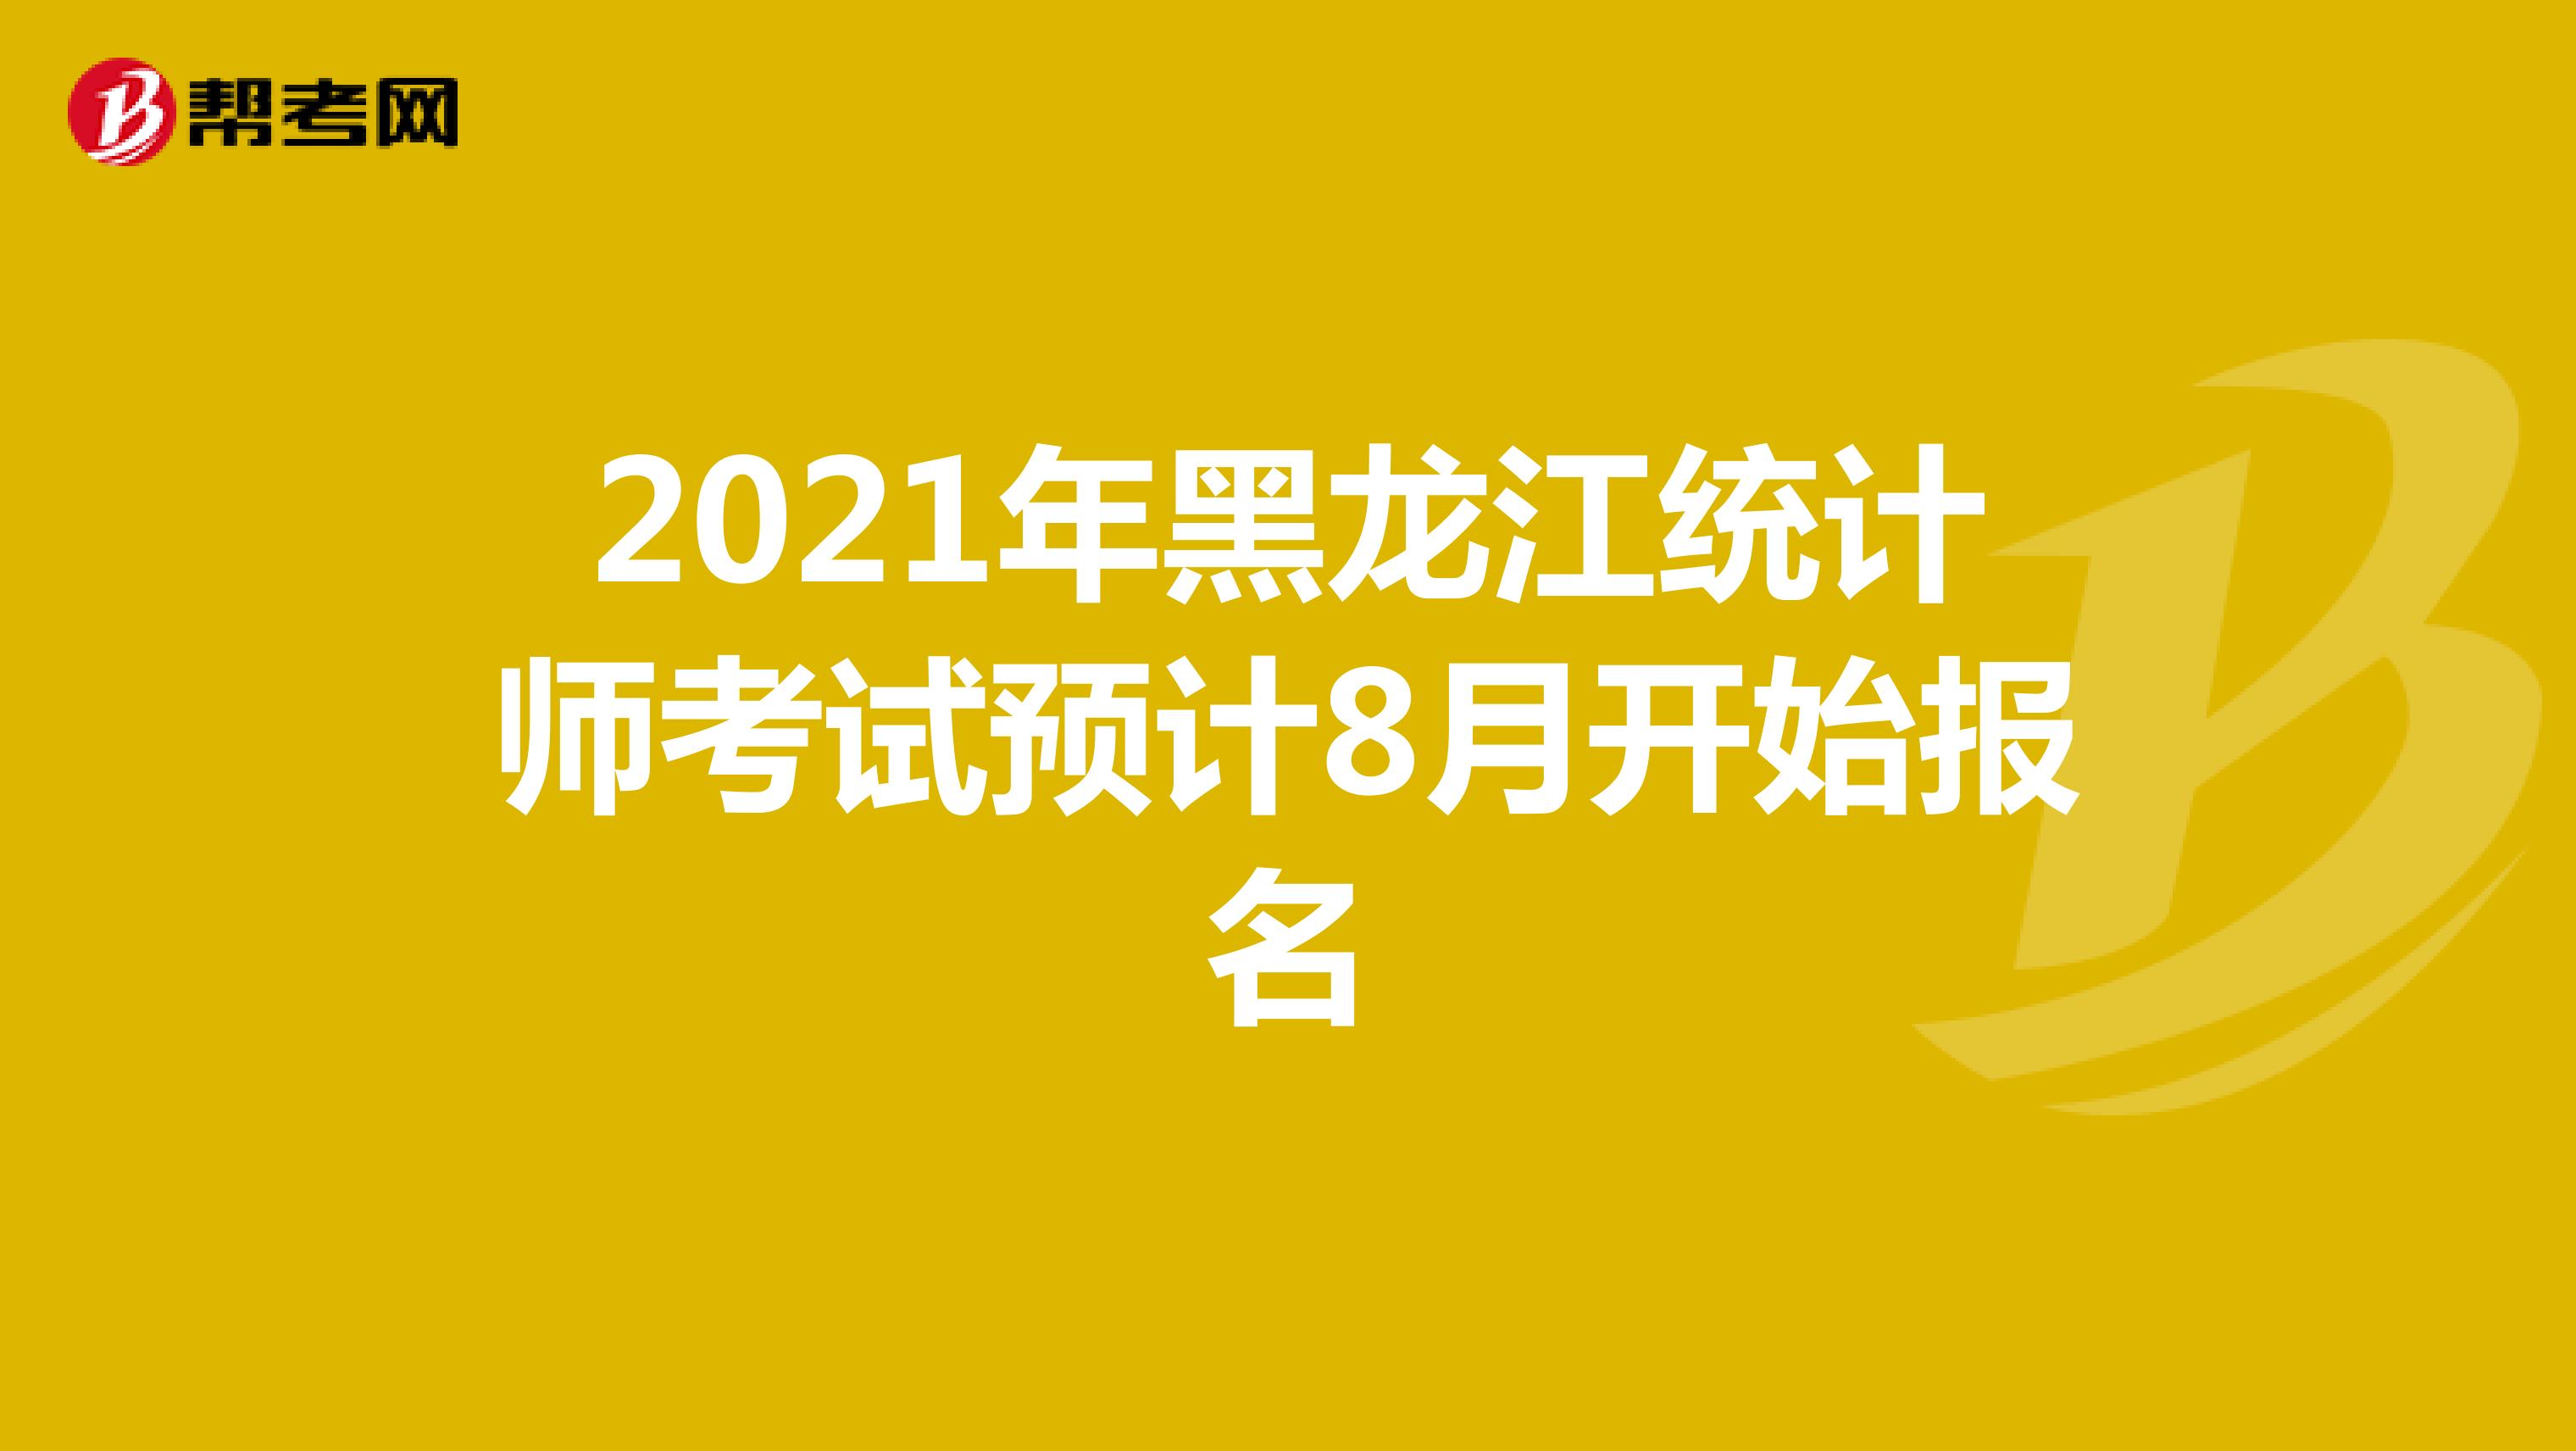 2021年黑龙江统计师考试预计8月开始报名